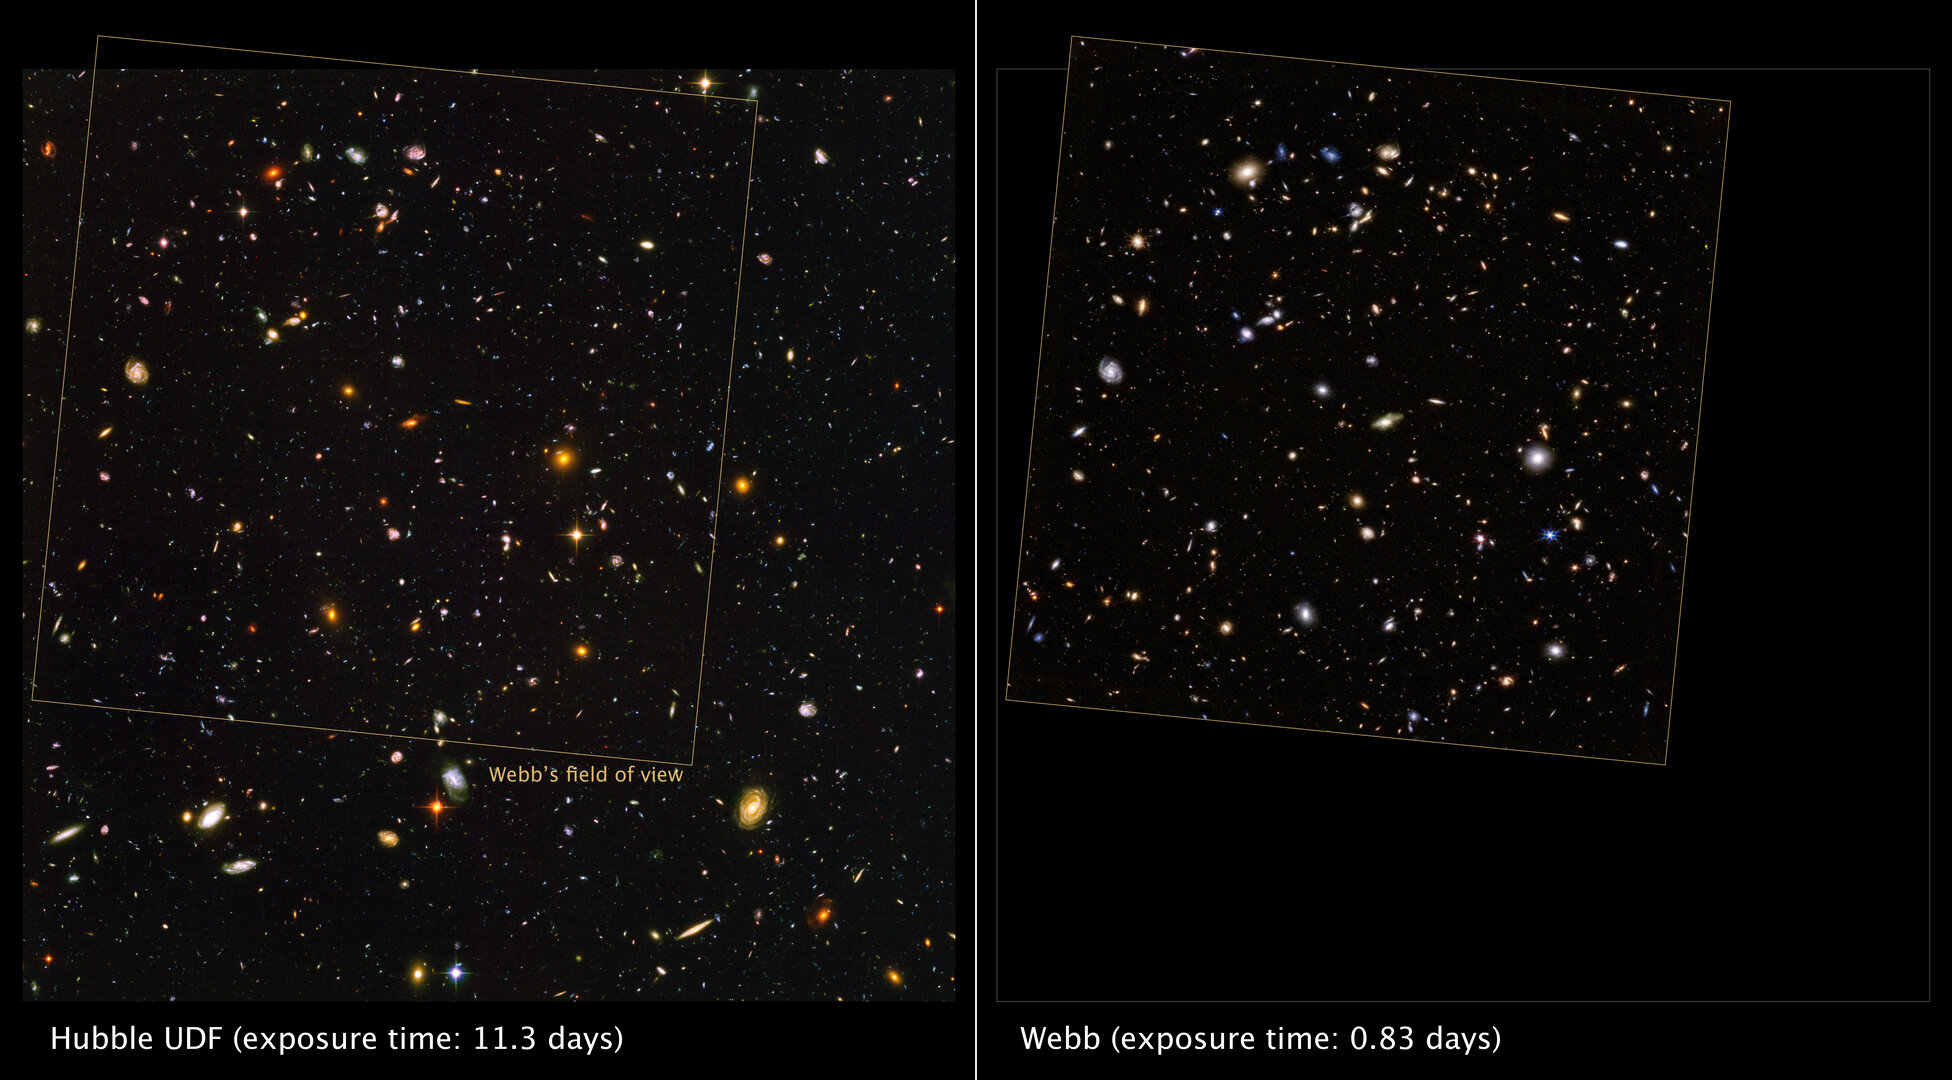 Webb observes the Hubble Ultra Deep Field